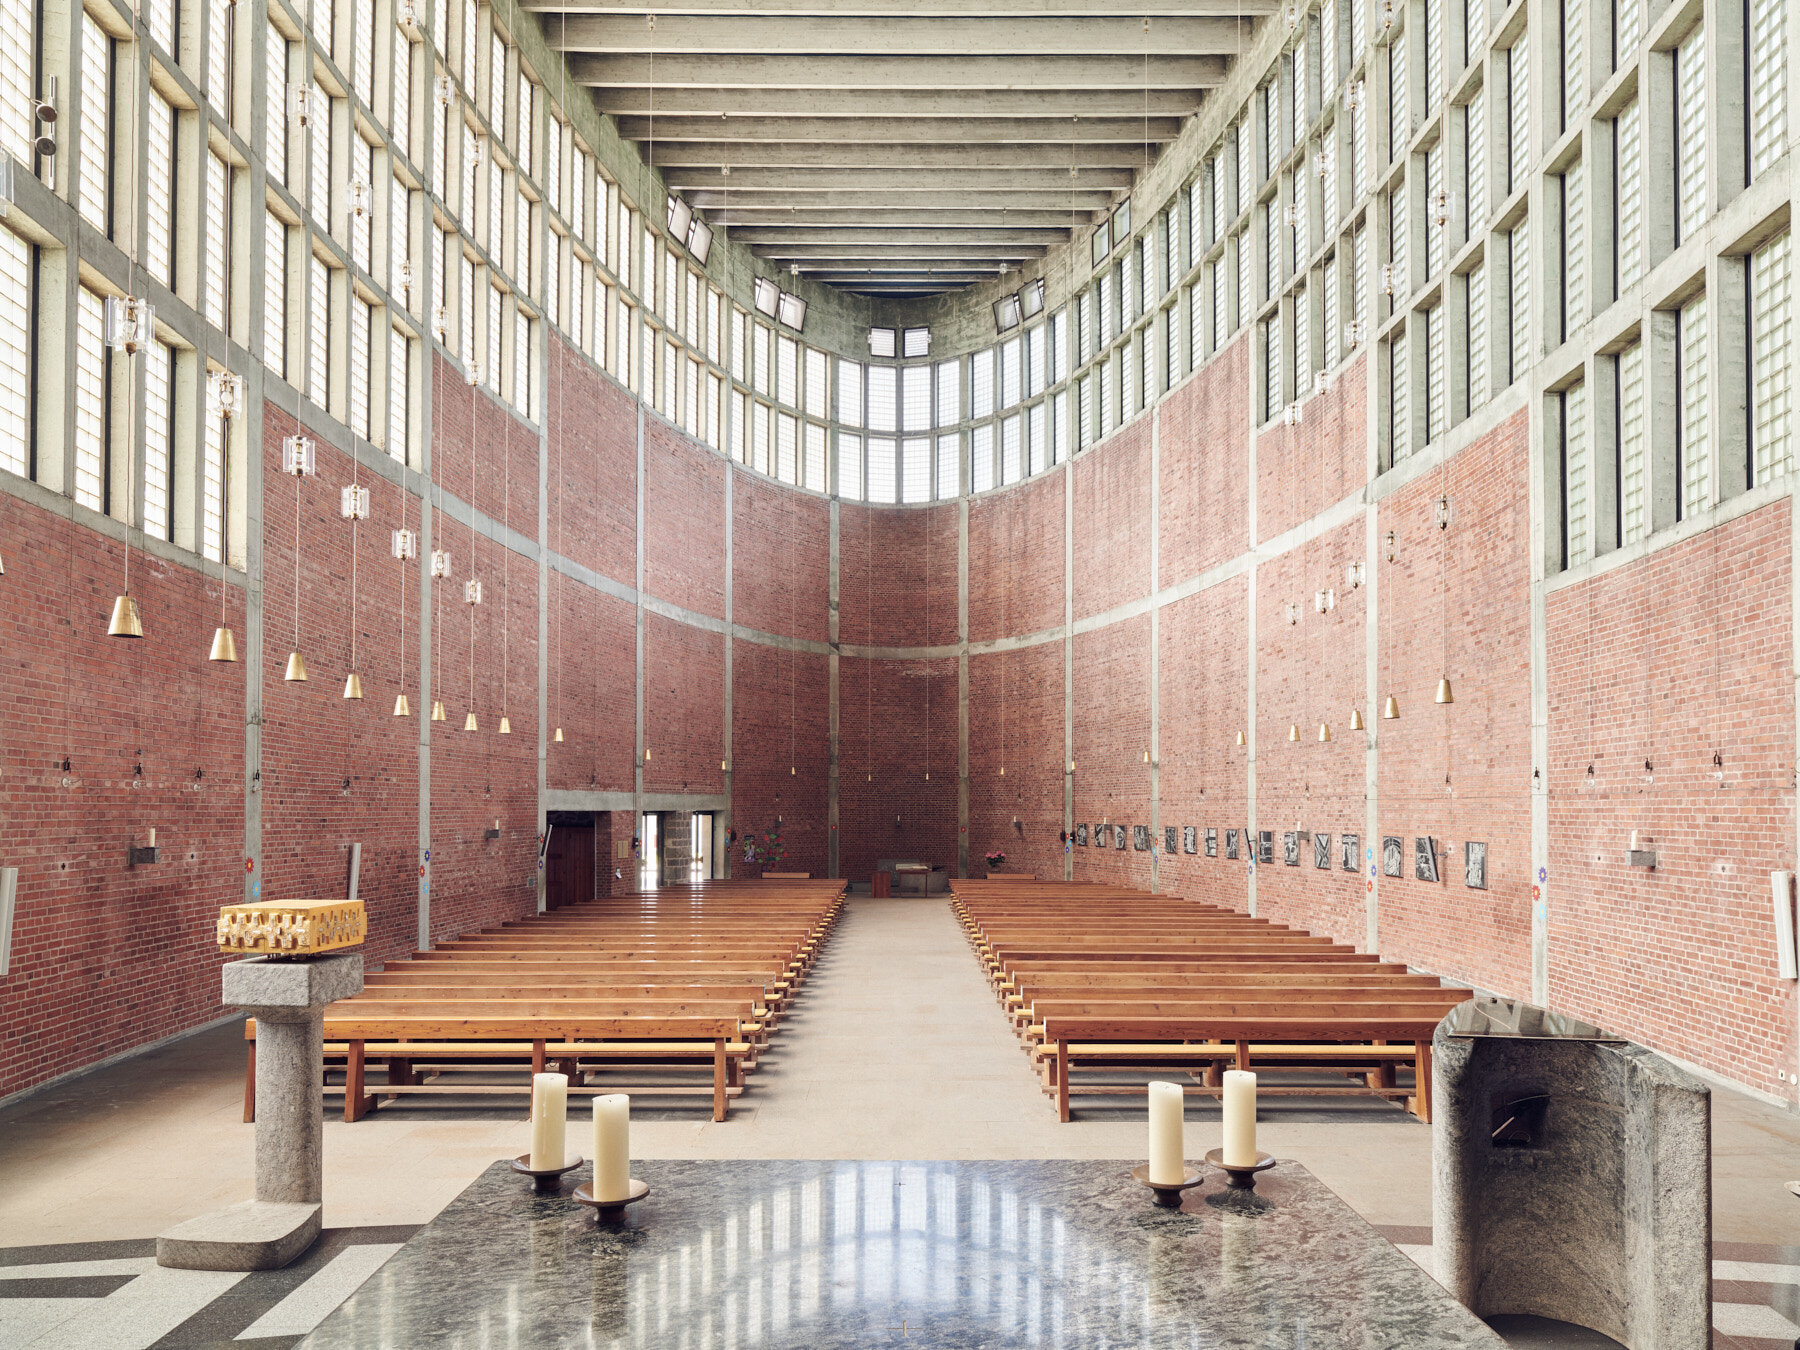 St. Theresia Kirche - Linz, Austria - Rudolf Schwarz, 1959-1962